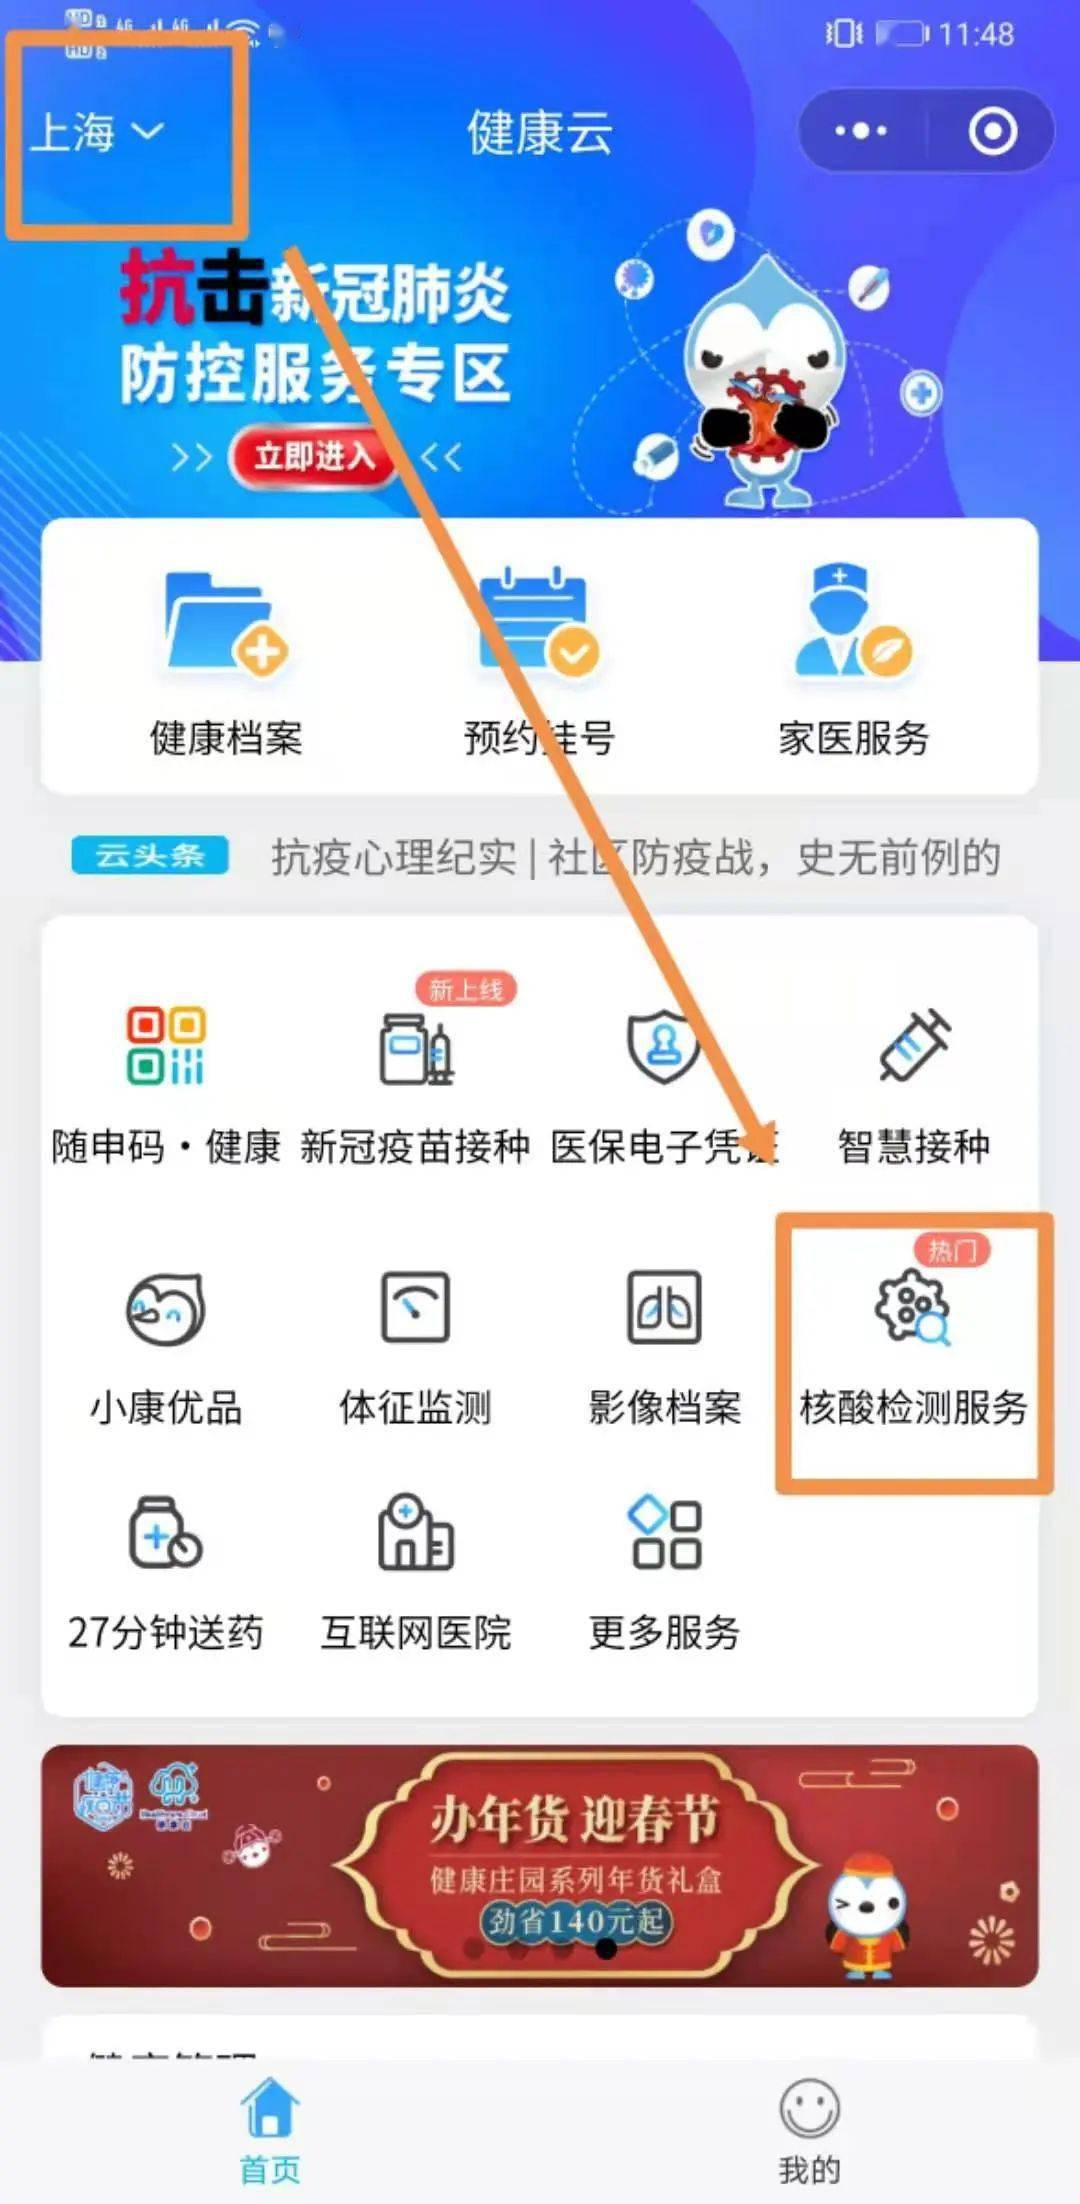 来上海德济医院采样前,请预先完成  "健康云"平台二维码登记